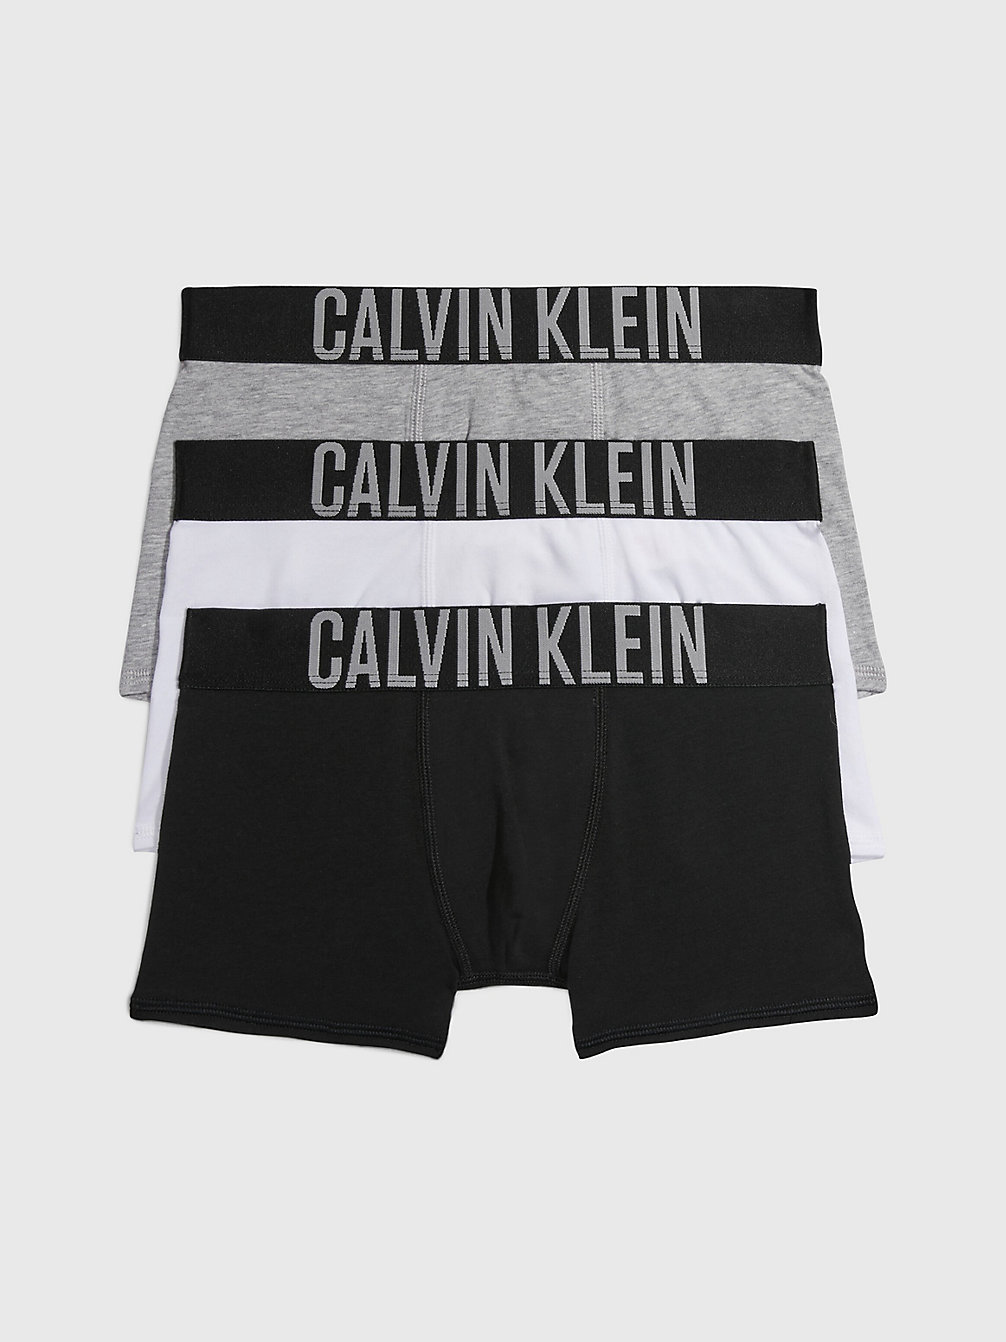 PVHBLACK/GREYHETHR/PVHWHITE 3 Pack Boys Trunks - Intense Power undefined boys Calvin Klein